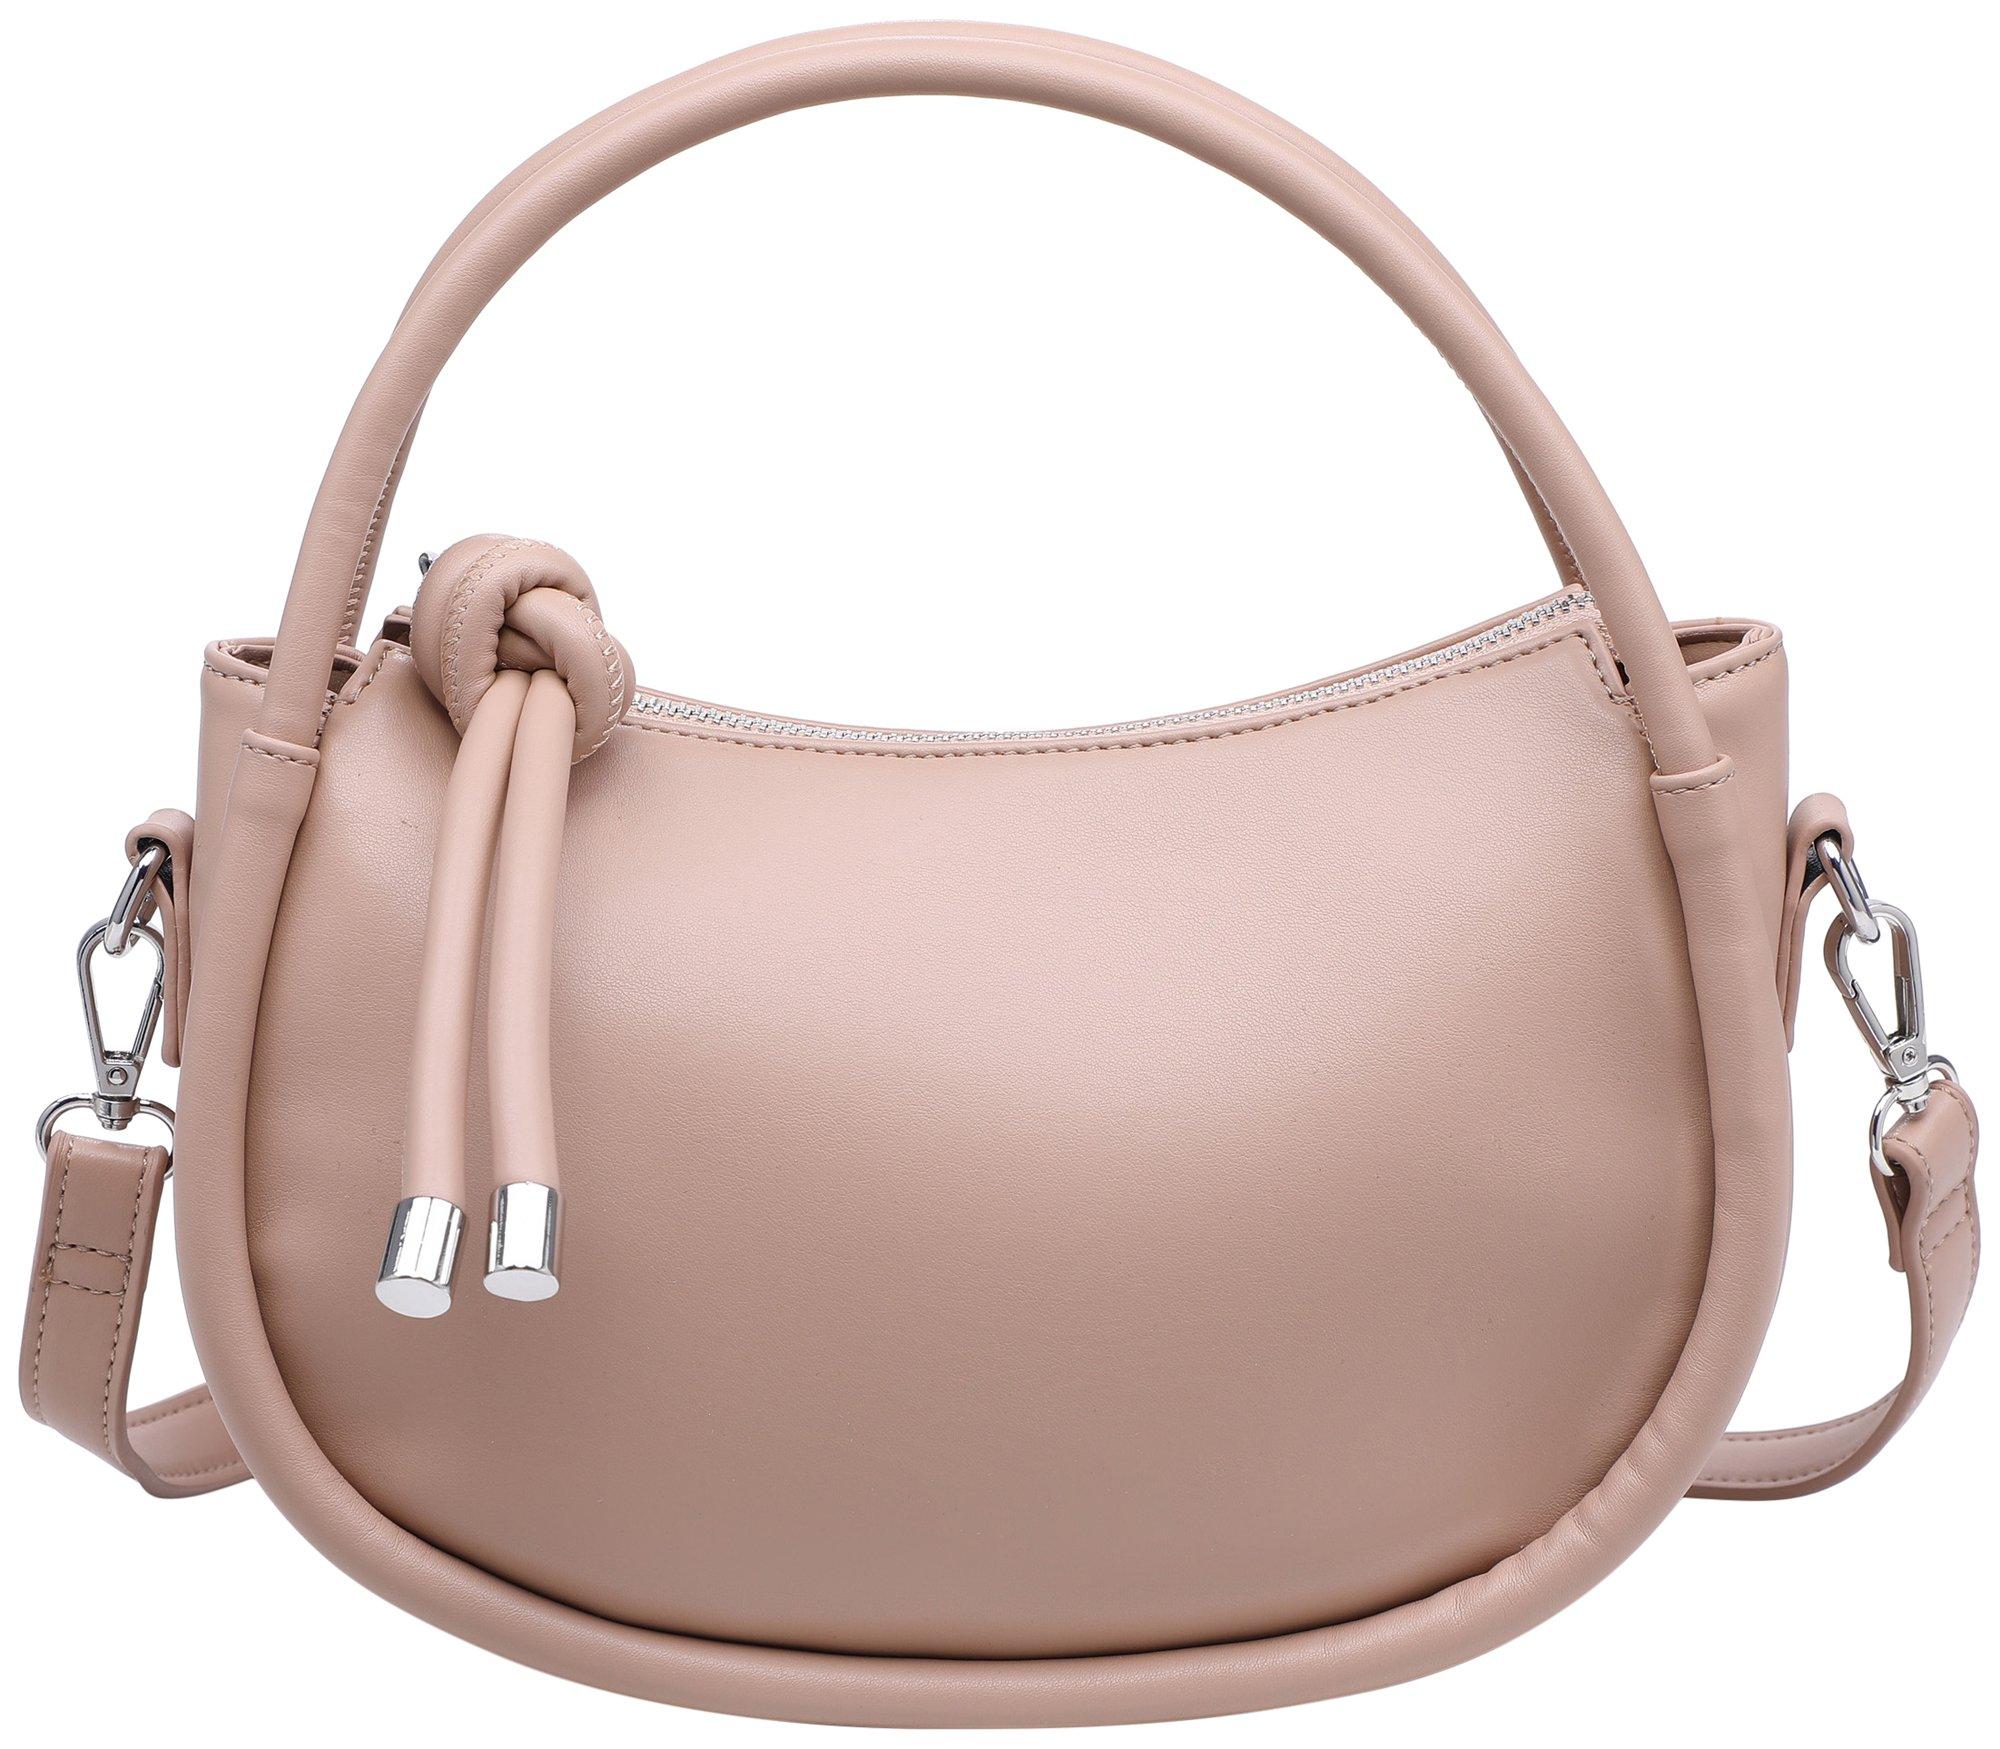 Bueno Solid Pebbled Medium Crossbody Bag One Size Dark khaki: Handbags:  Amazon.com